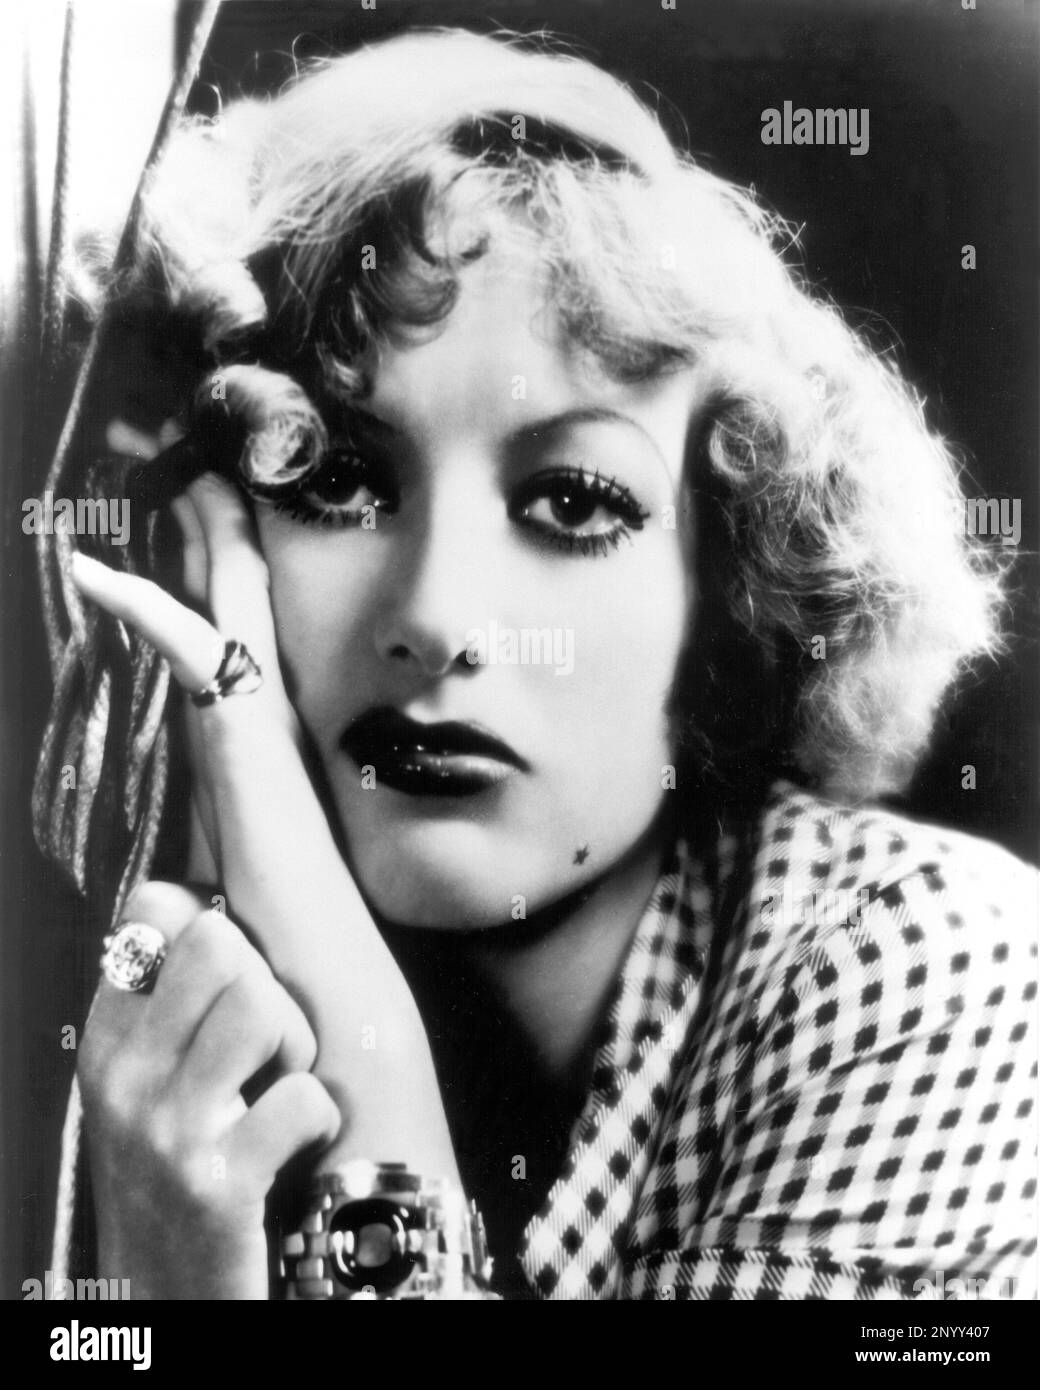 1932 , USA : The movie actress JOAN  CRAWFORD in RAIN ( Pioggia ) by Lewis Milestone , from a story by W. Somerset Maugham  - FILM - CINEMA - portrait - ritratto - gioiello - gioielli - jewels - ring - anello - neo - mole - stella - star - bijoux - bracelet - braccialetto - DIVA - DIVINA - VAMP - bionda - blonde  hair - capelli biondi   ----  Archivio GBB Stock Photo